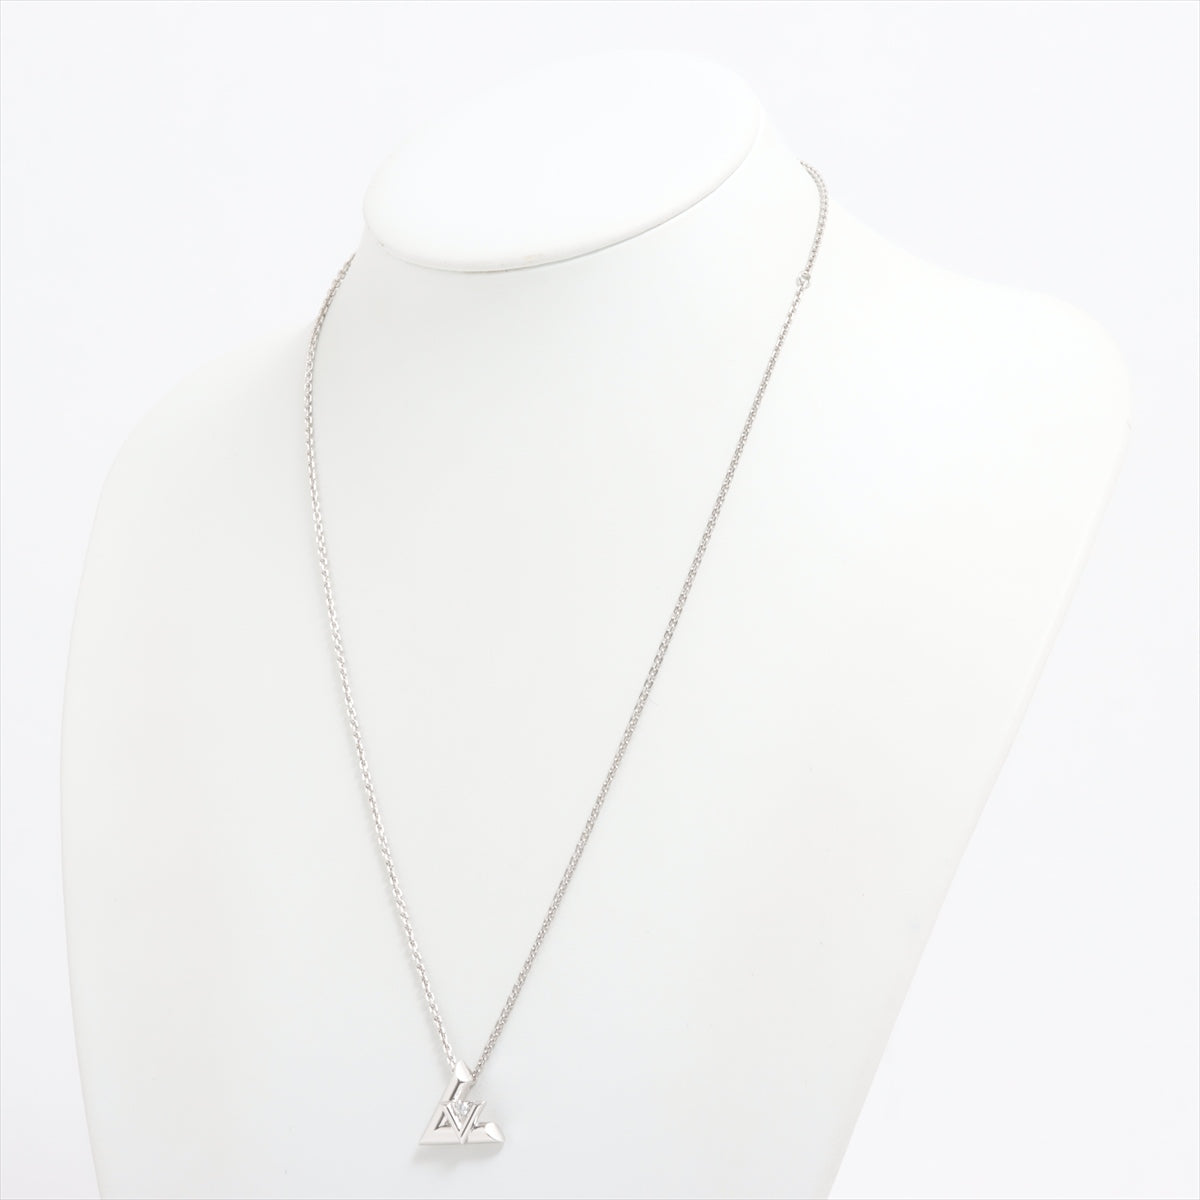 Louis Vuitton Pandantive LV Volt one GM diamond necklace 750 (WG) 18.0g